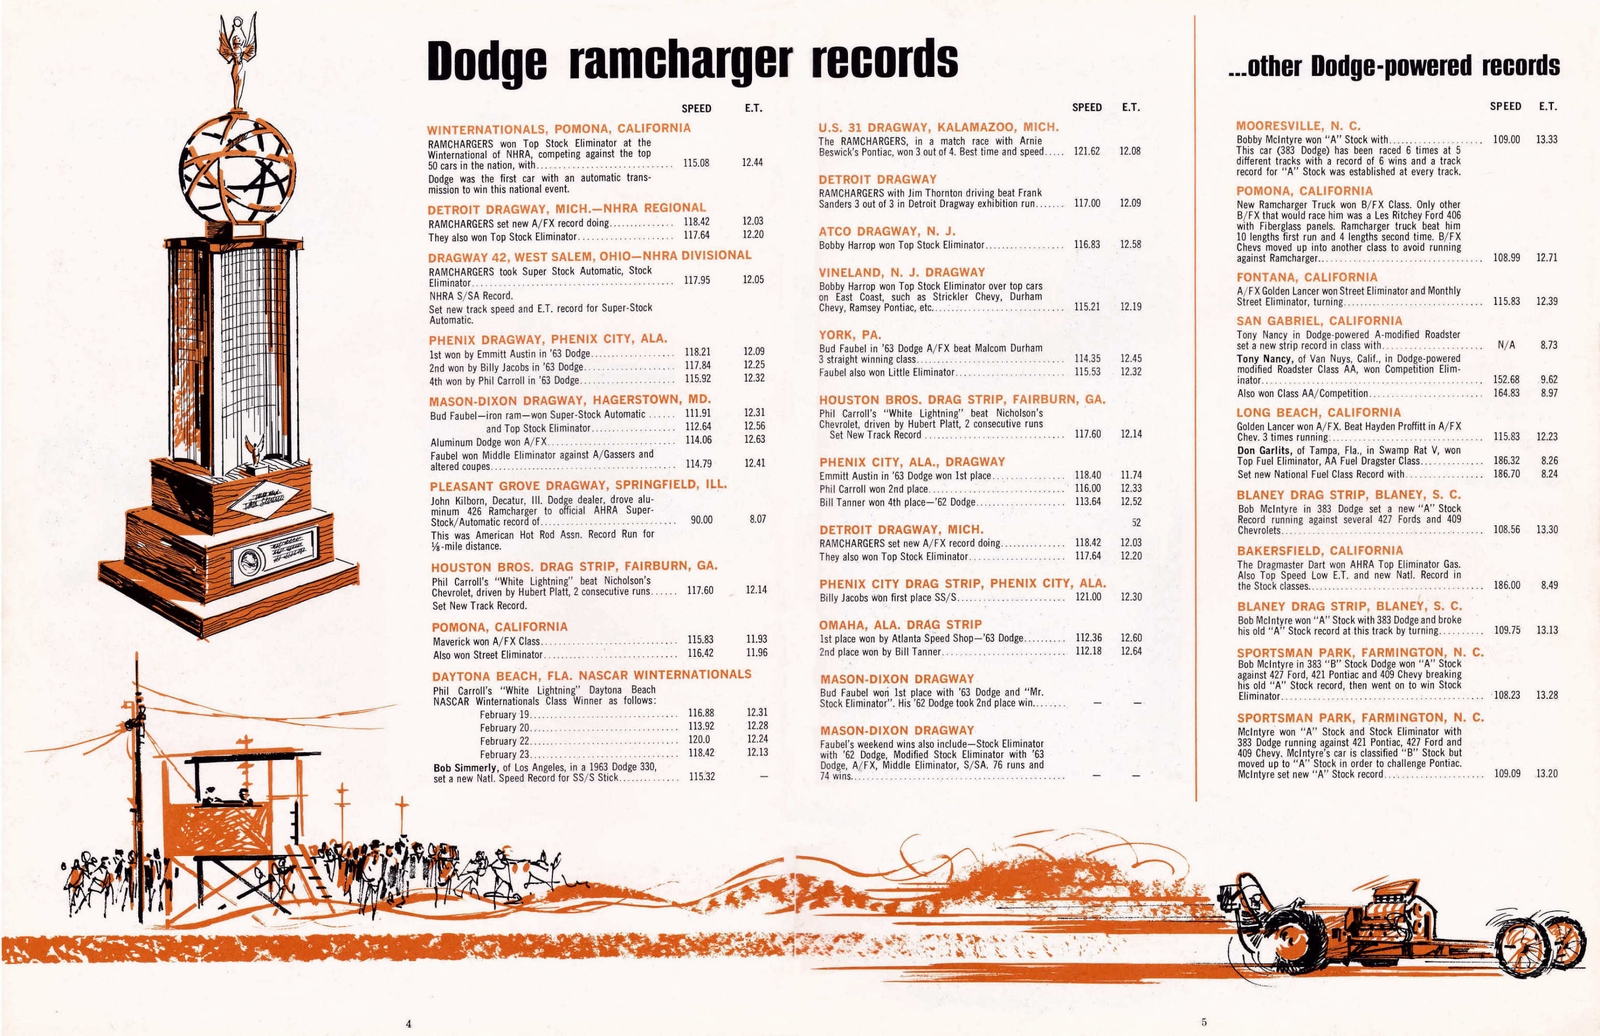 n_1964 Dodge Ramcharger Booklet-04-05.jpg